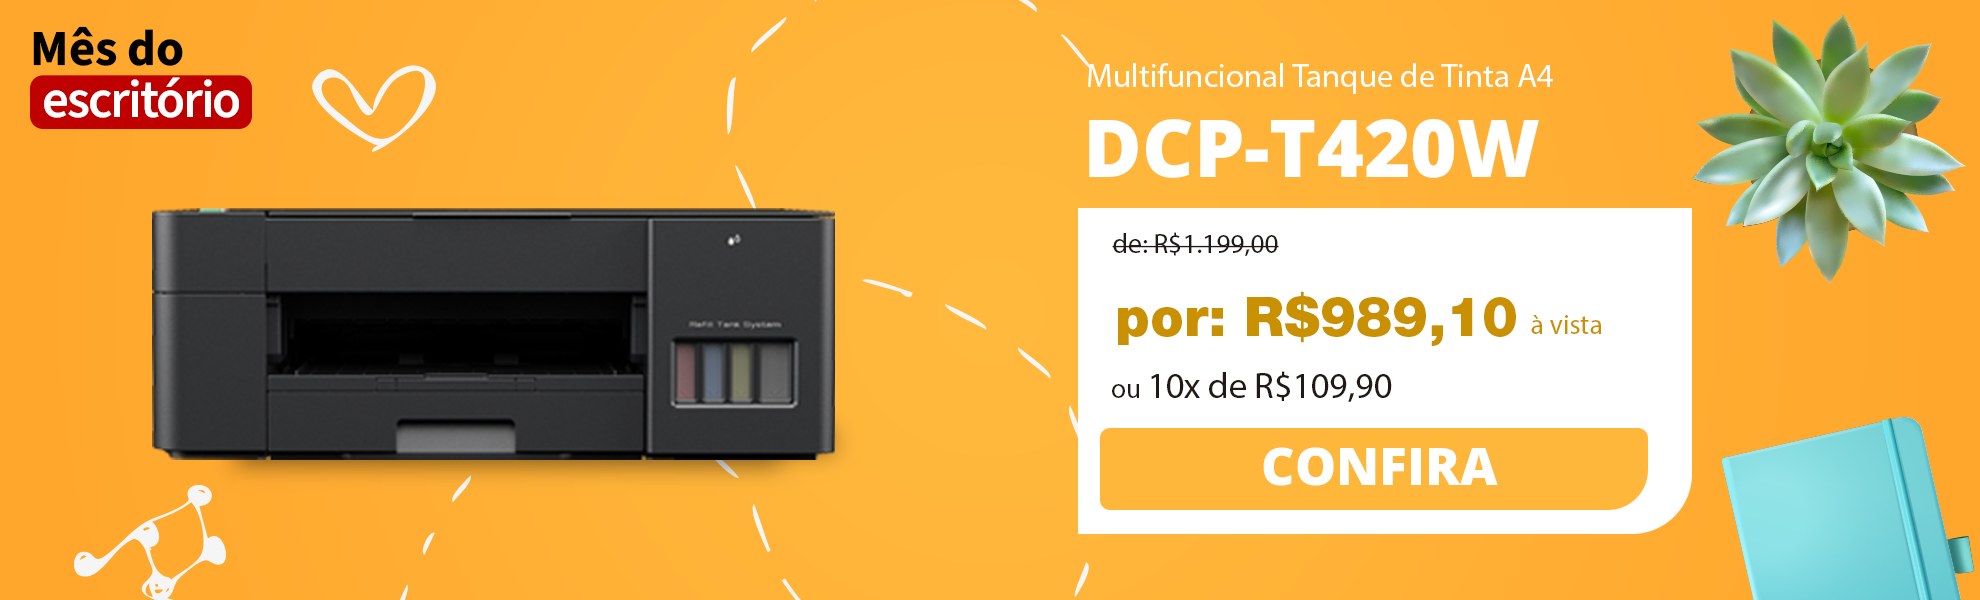 Multifuncional Tanque de Tinta DCPT220, Colorida, Wi-Fi, Conexão USB, Brother